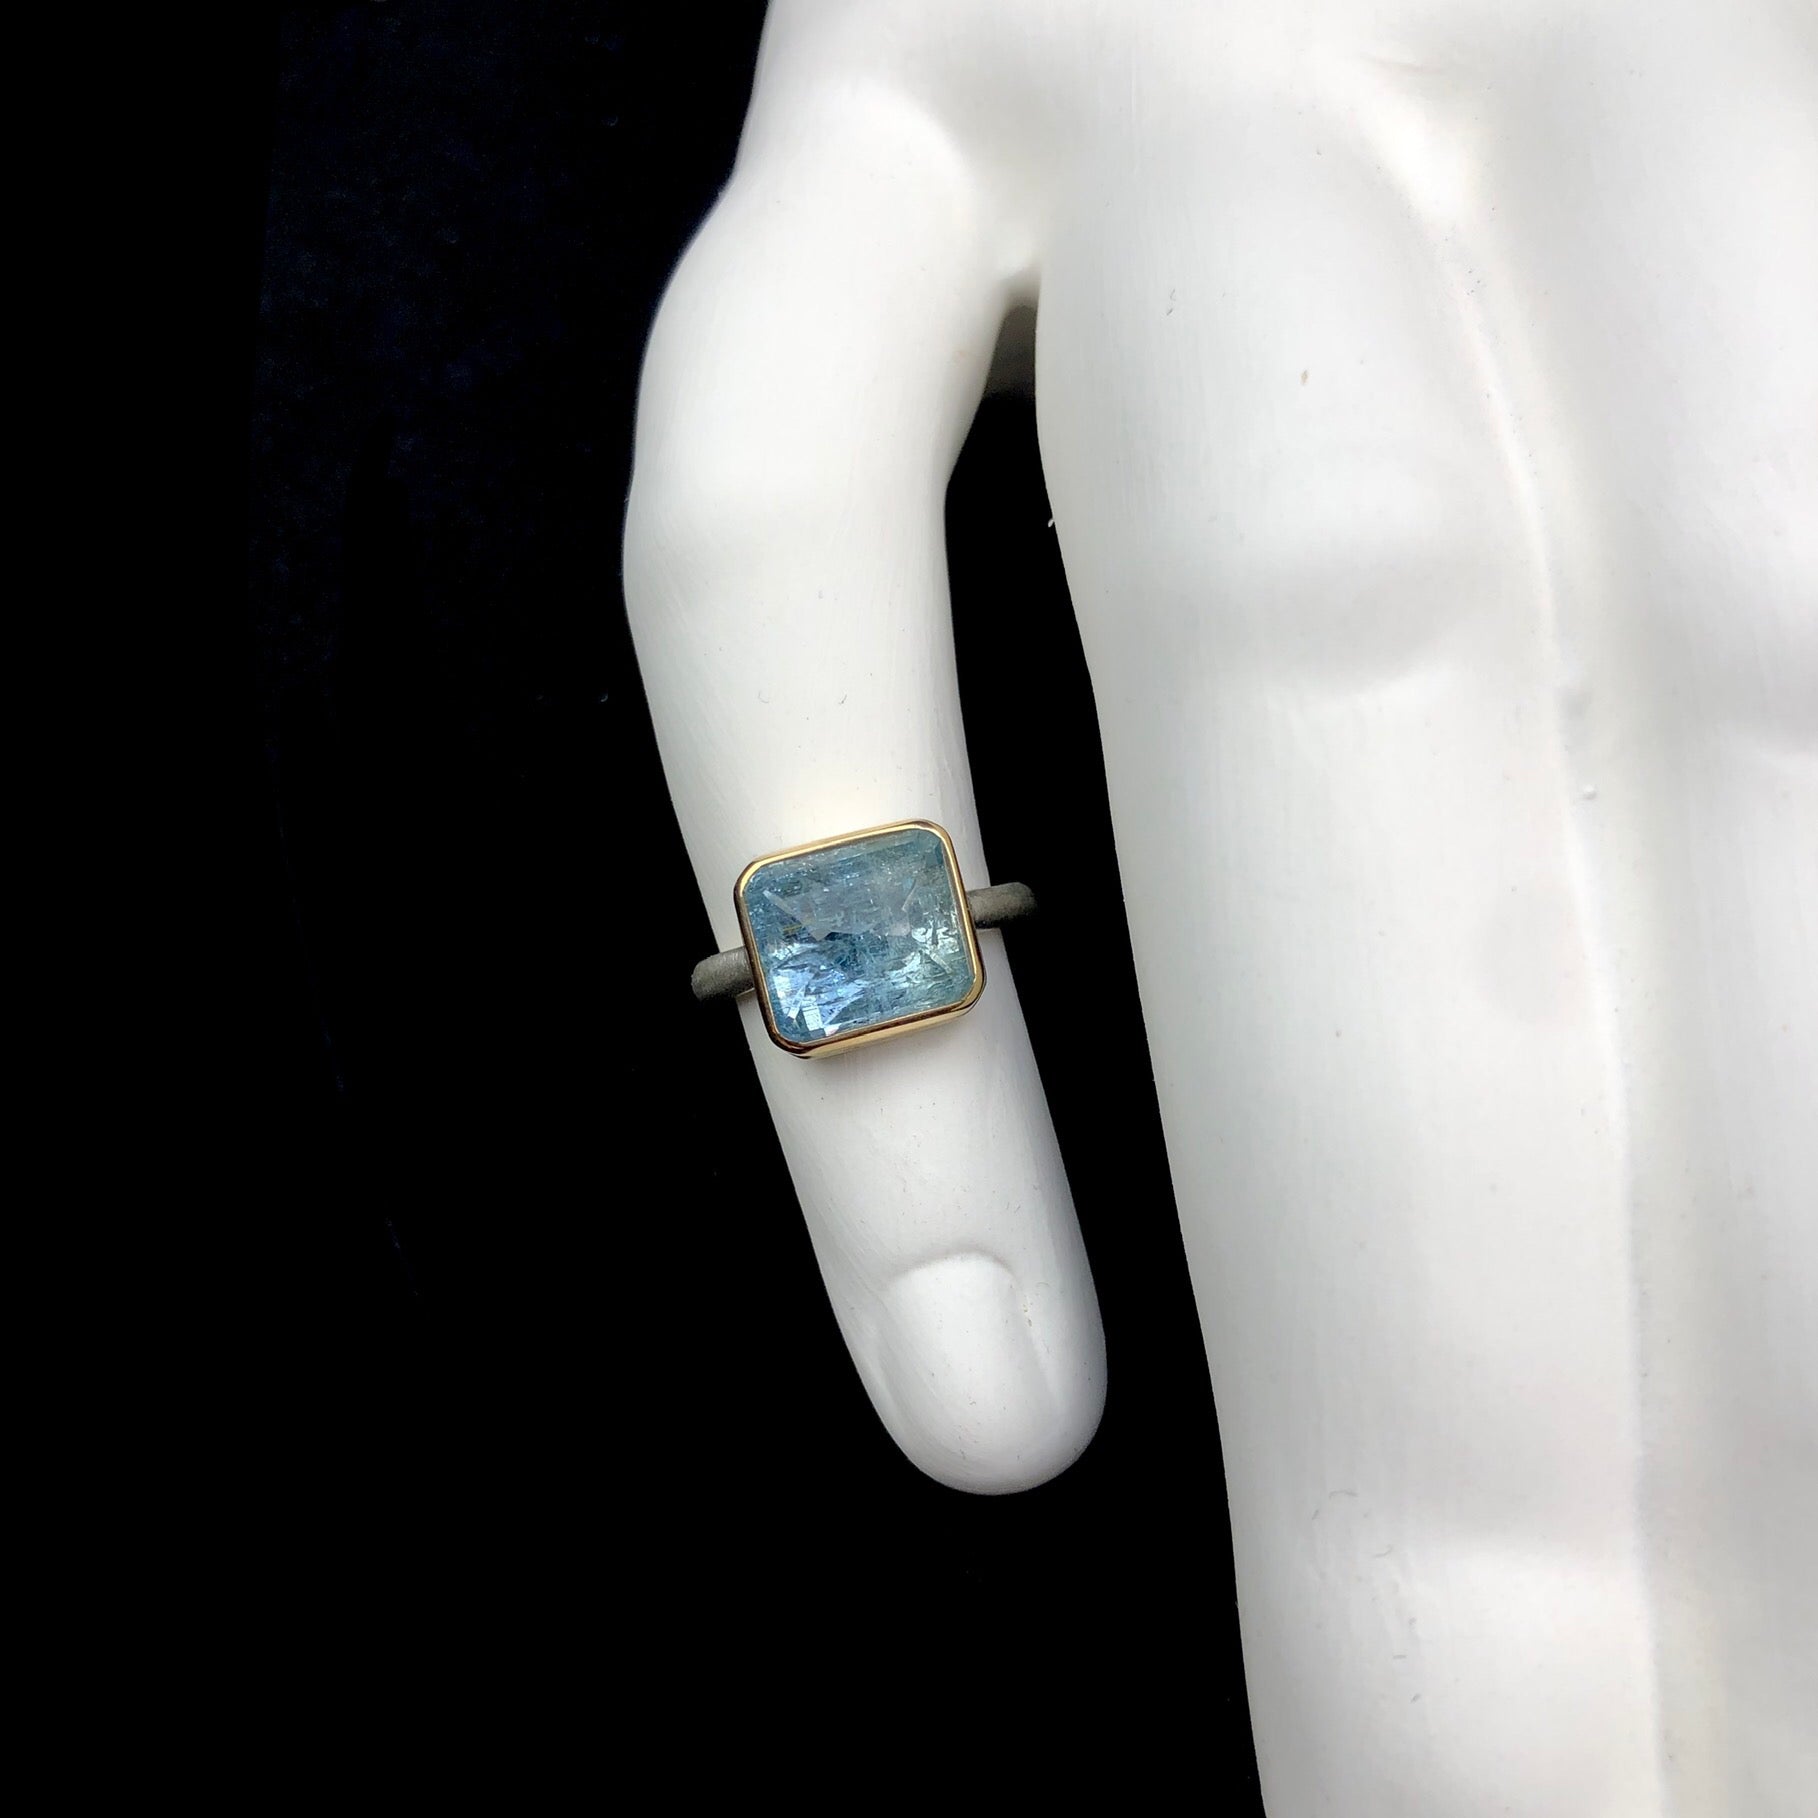 Light blue aquamarine stone ring shown on white ceramic finger